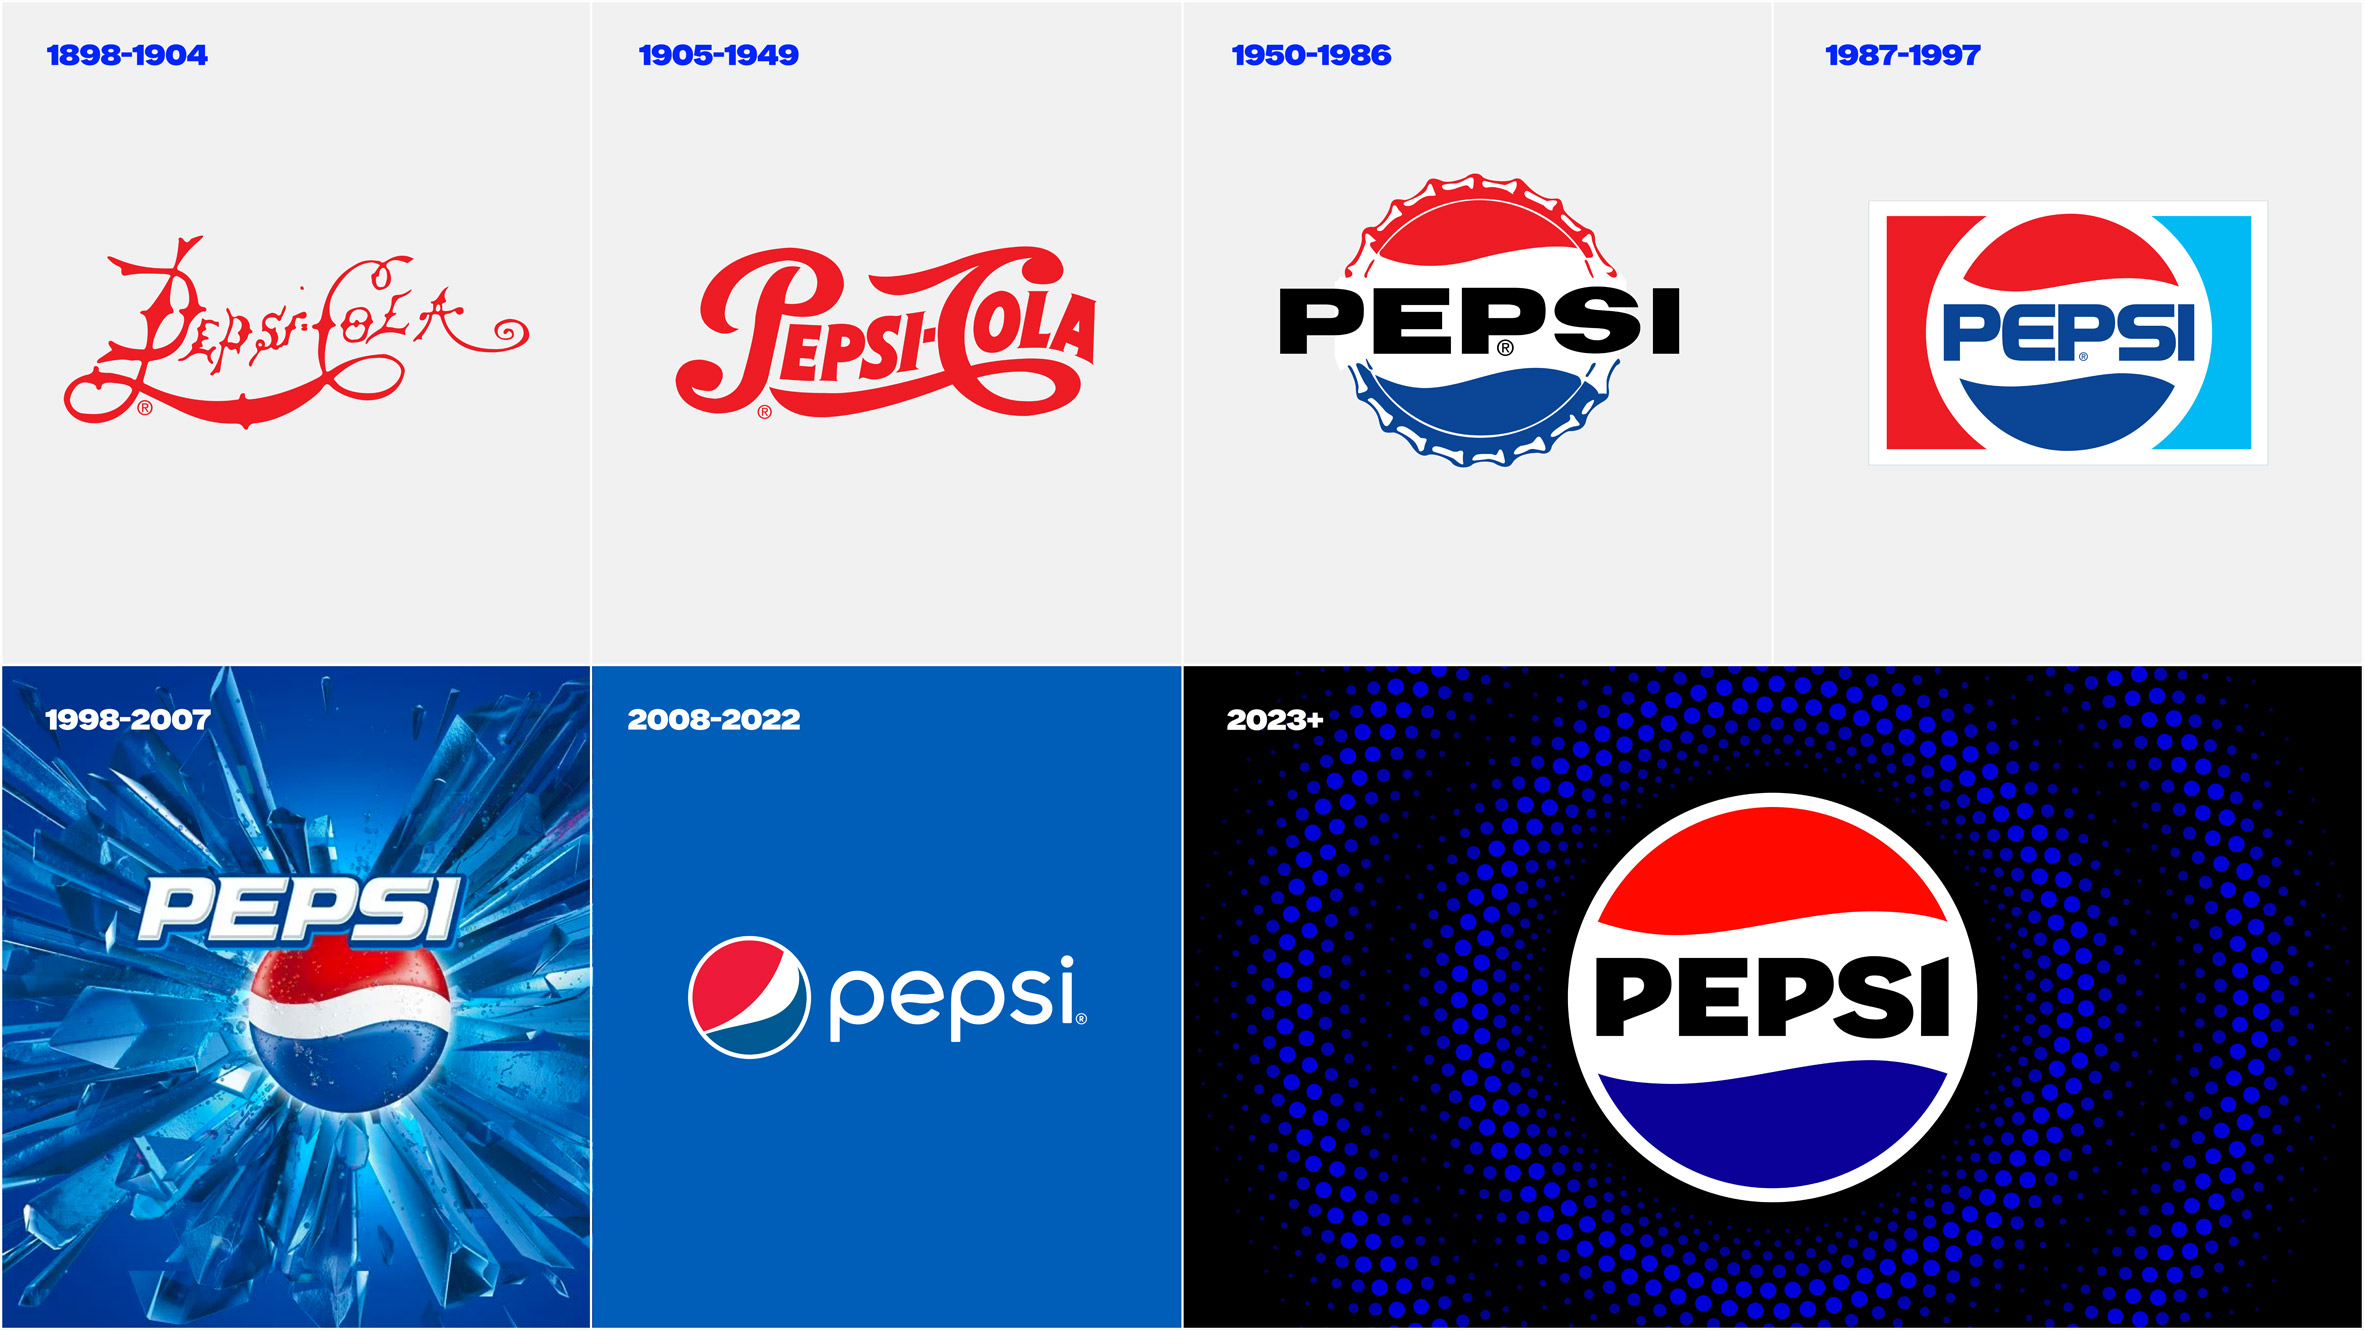 History of Pepsi branding